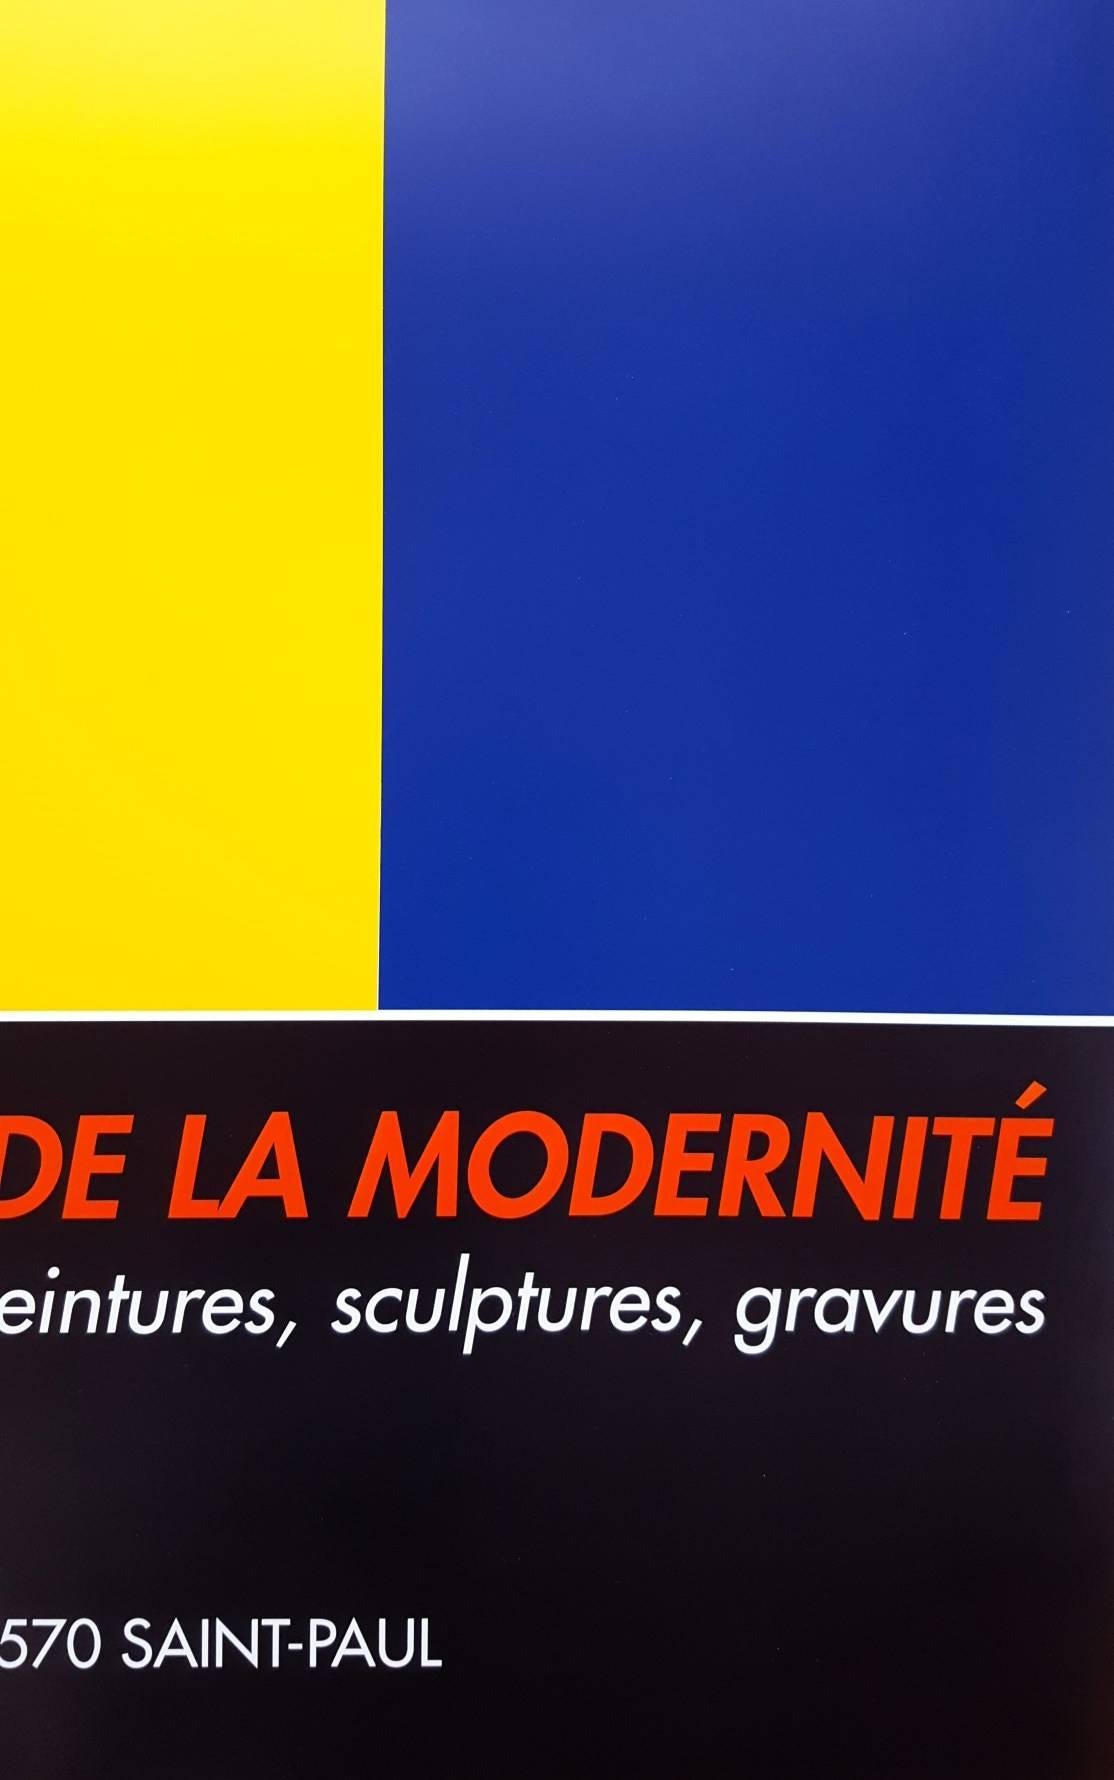 Fondation Maeght: Les Ateliers de La Modernite (Red, Yellow, Blue) 2